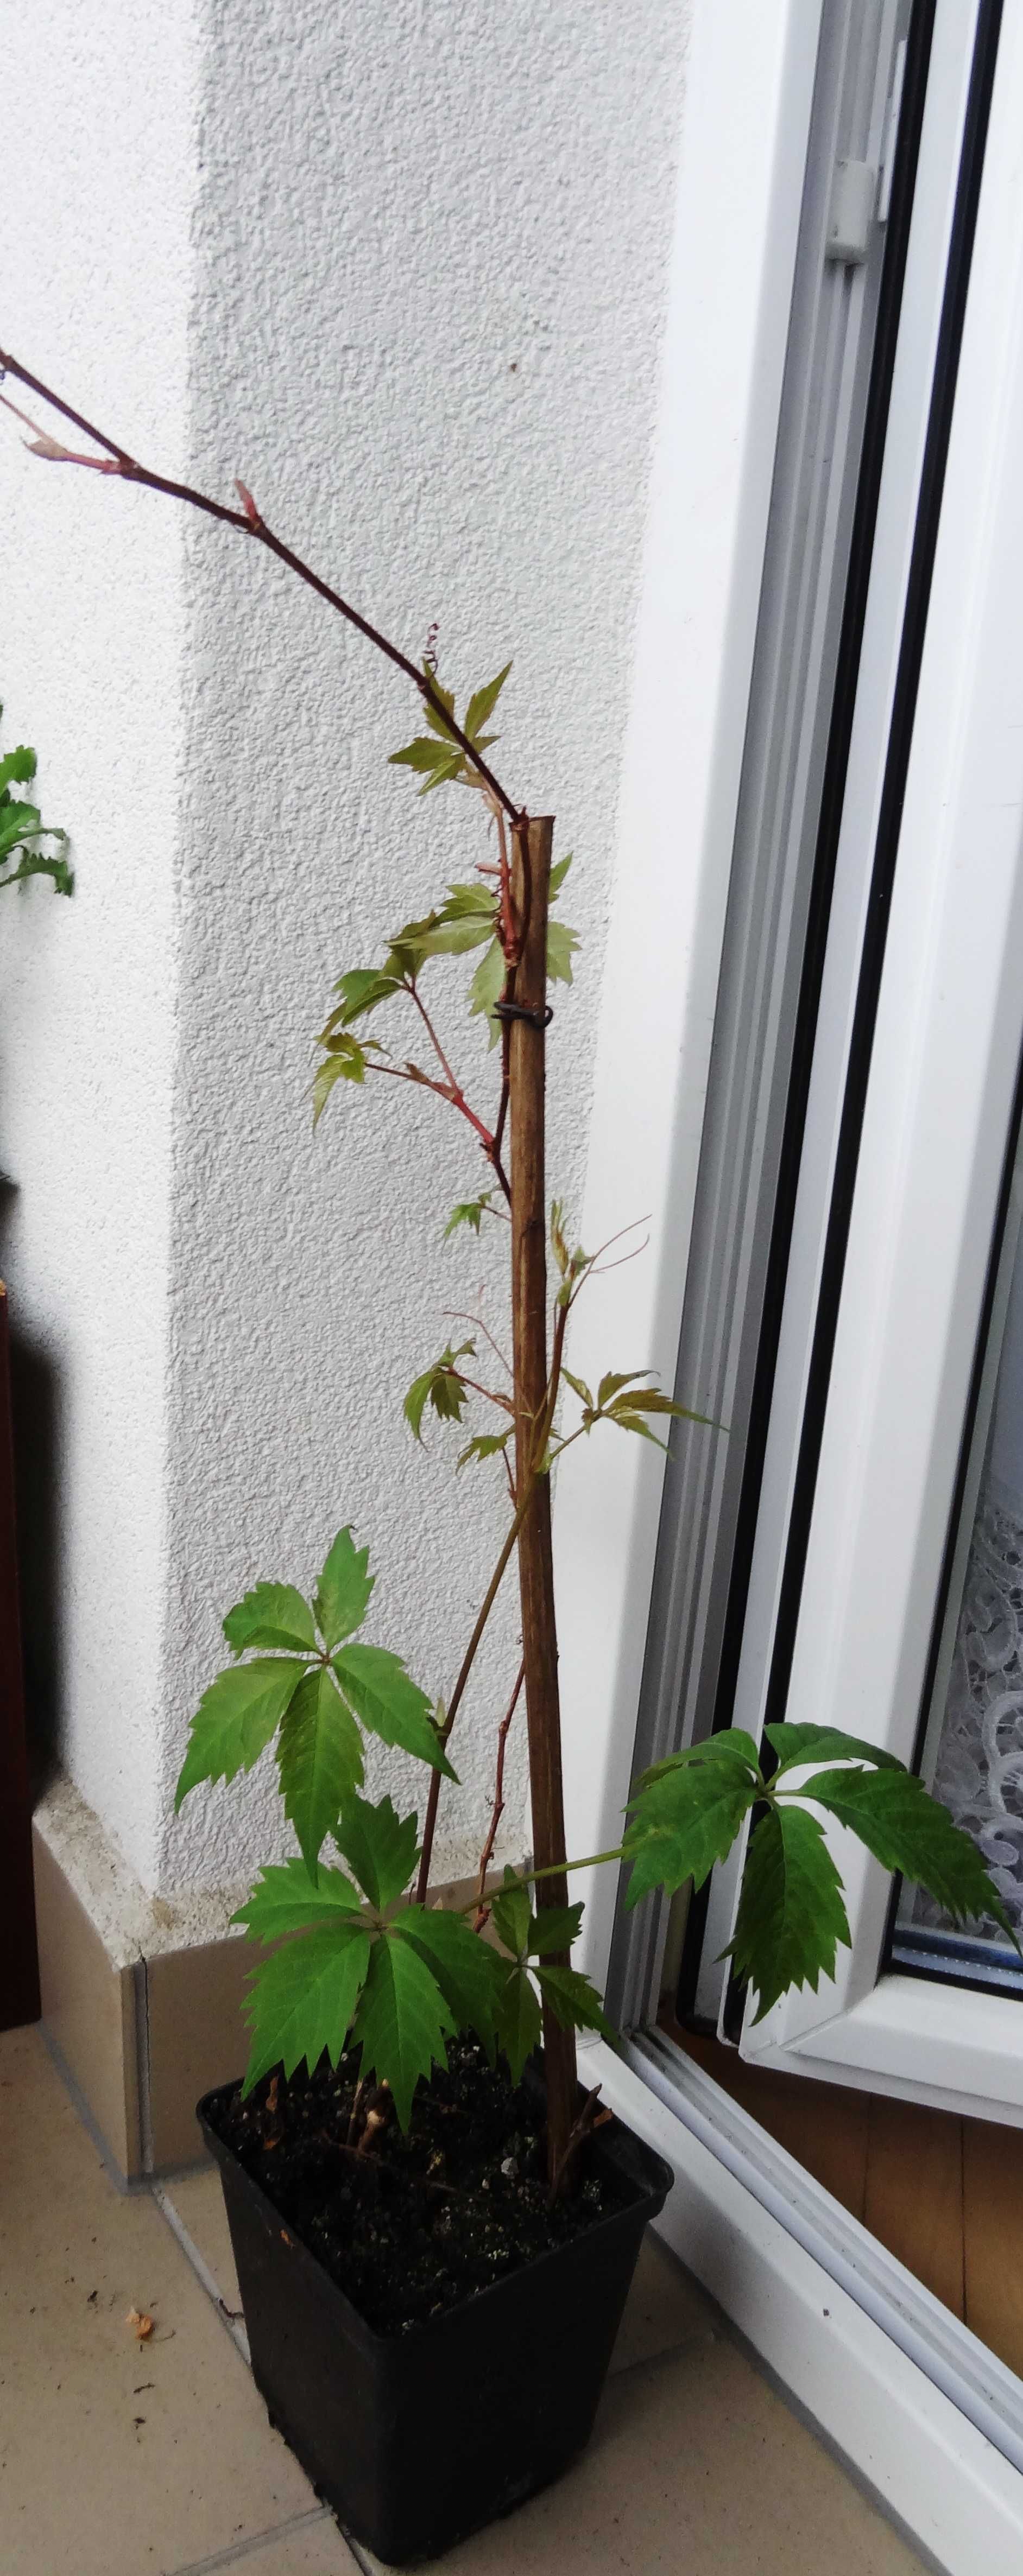 Winobluszcz (Parthenocissus) pnącze- sadzonki w doniczce P14